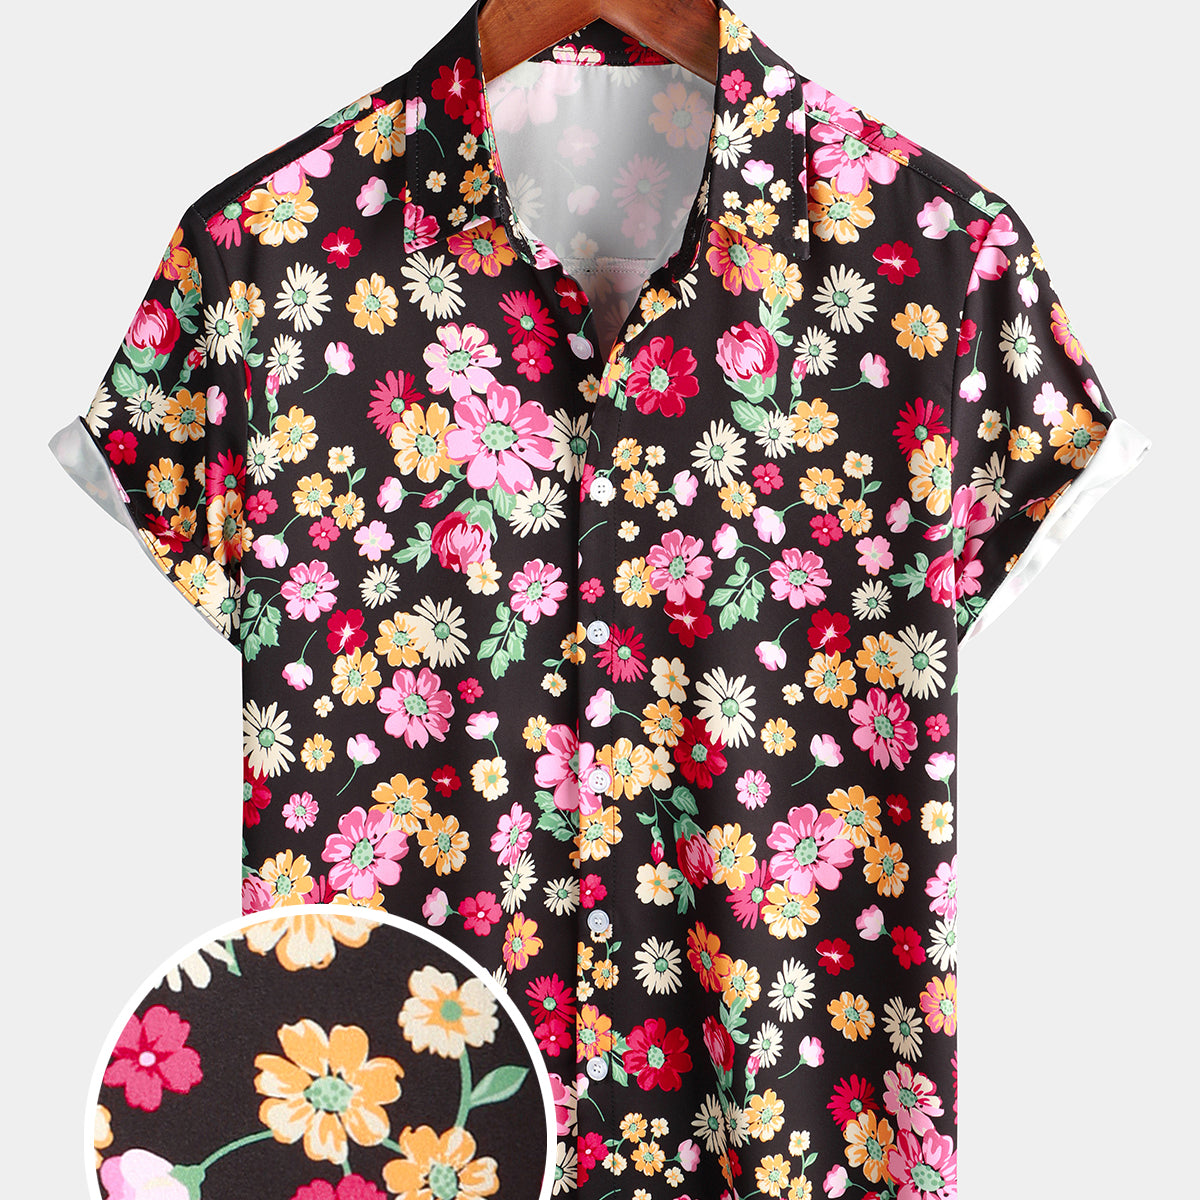 Men's Summer Cute Floral Print Flower Art Vacation Button Up Beach Short Sleeve Shirt